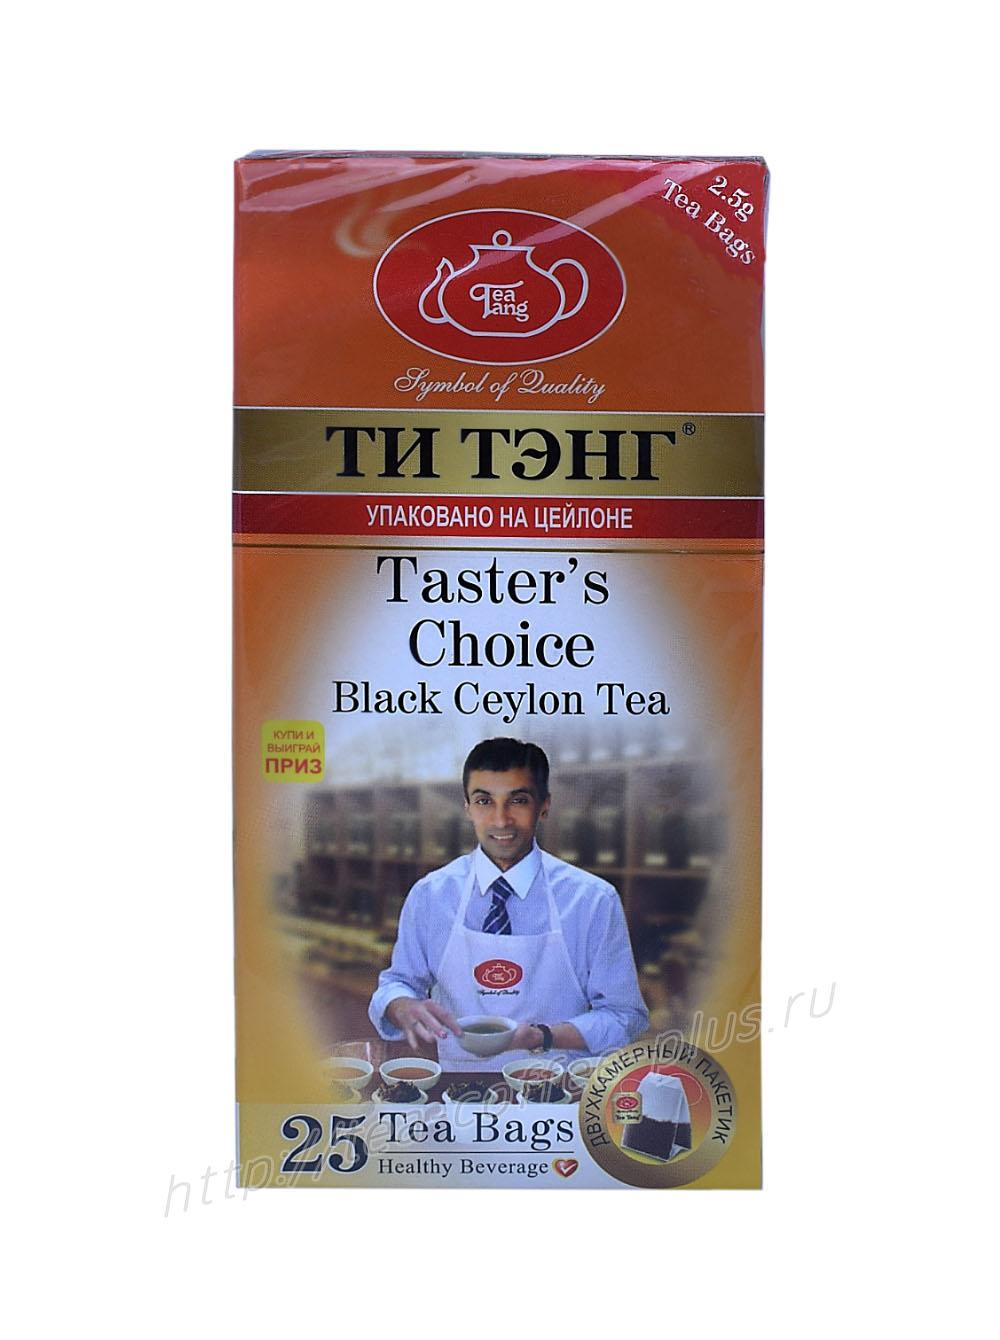 Чай Ти Тэнг Выбор дегустатора черный, 25 пакетов, 62.5 гр., картон